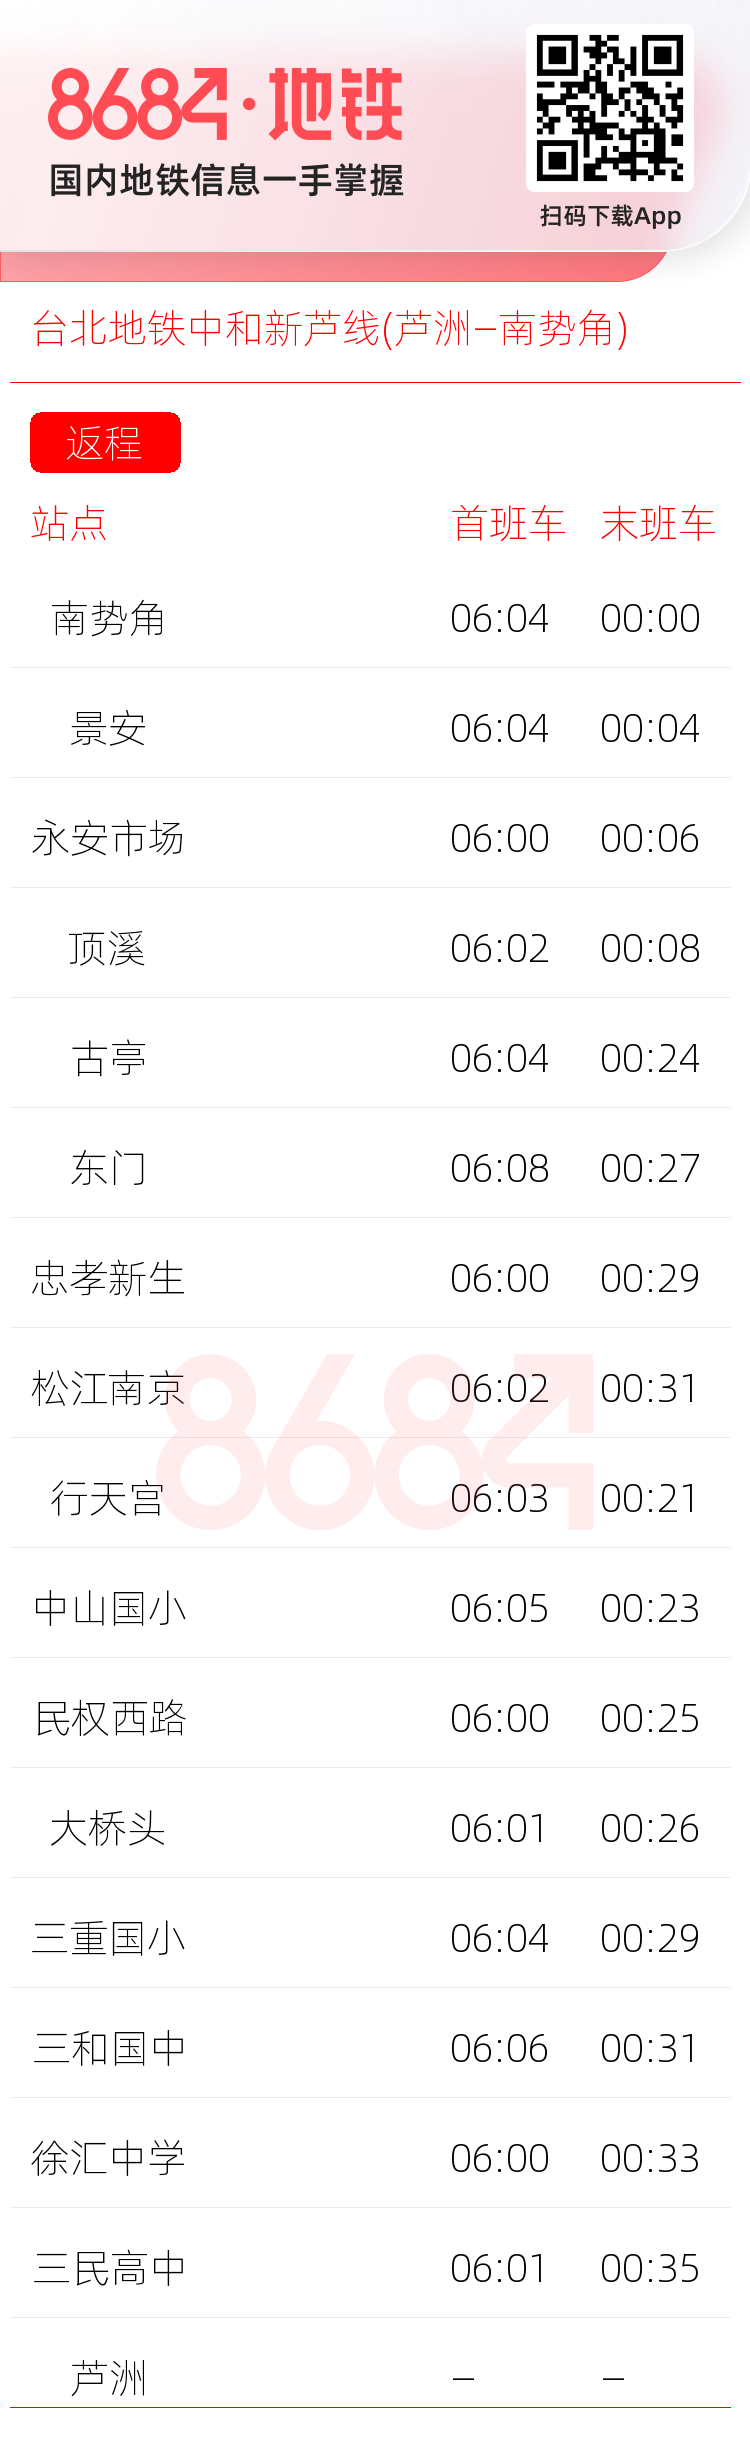 台北地铁中和新芦线(芦洲—南势角)运营时间表